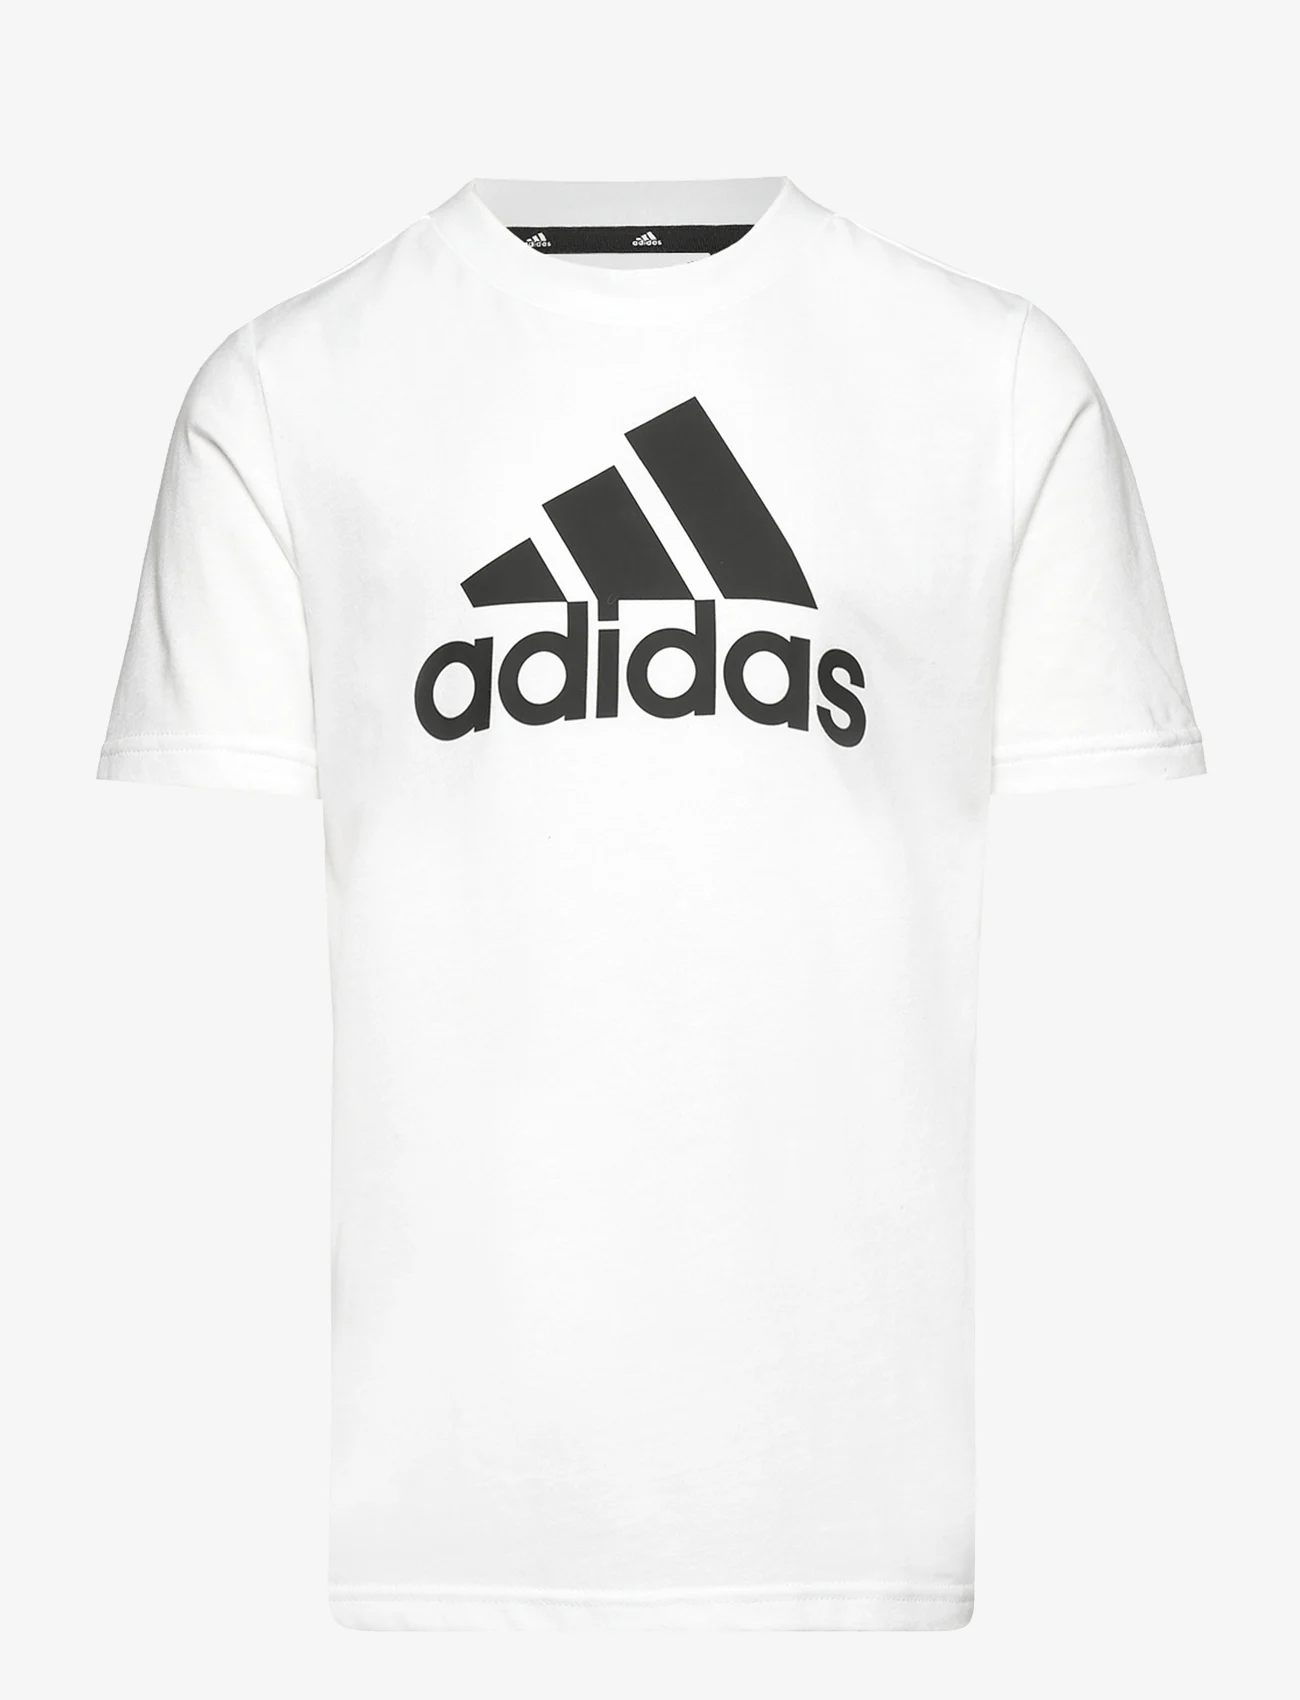 adidas Sportswear - LK BL CO TEE - lühikeste varrukatega t-särgid - white/black - 0